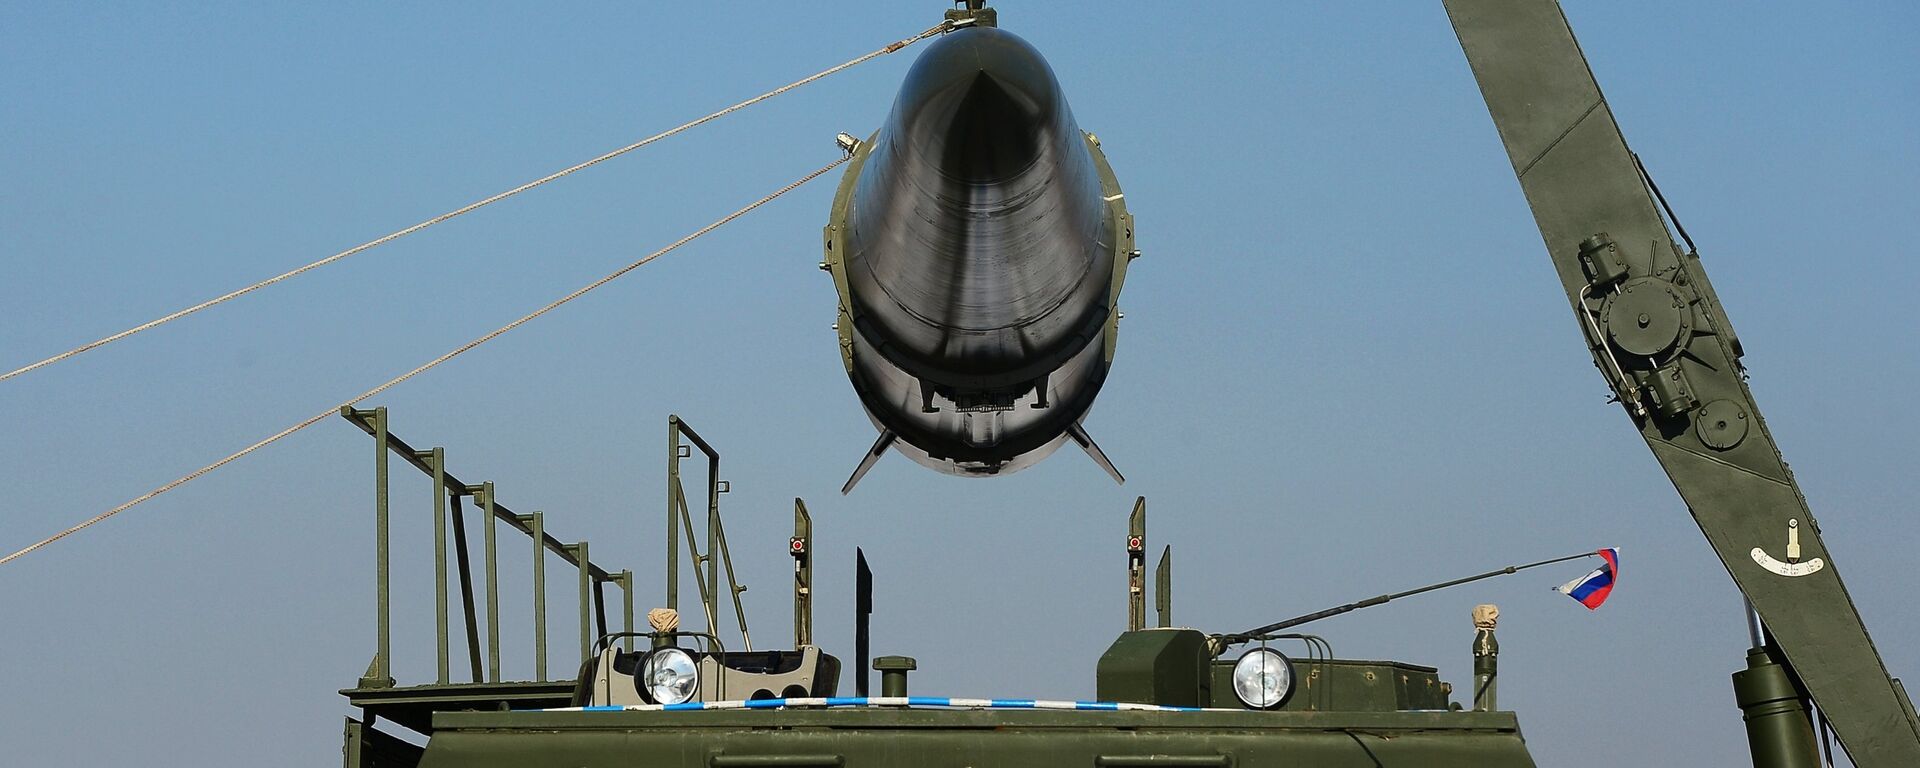 Загрузка ракеты транспортно-заряжающий машиной на самоходную пусковую установку оперативно-тактического ракетного комплекса Искандер-М - Sputnik Latvija, 1920, 25.09.2020